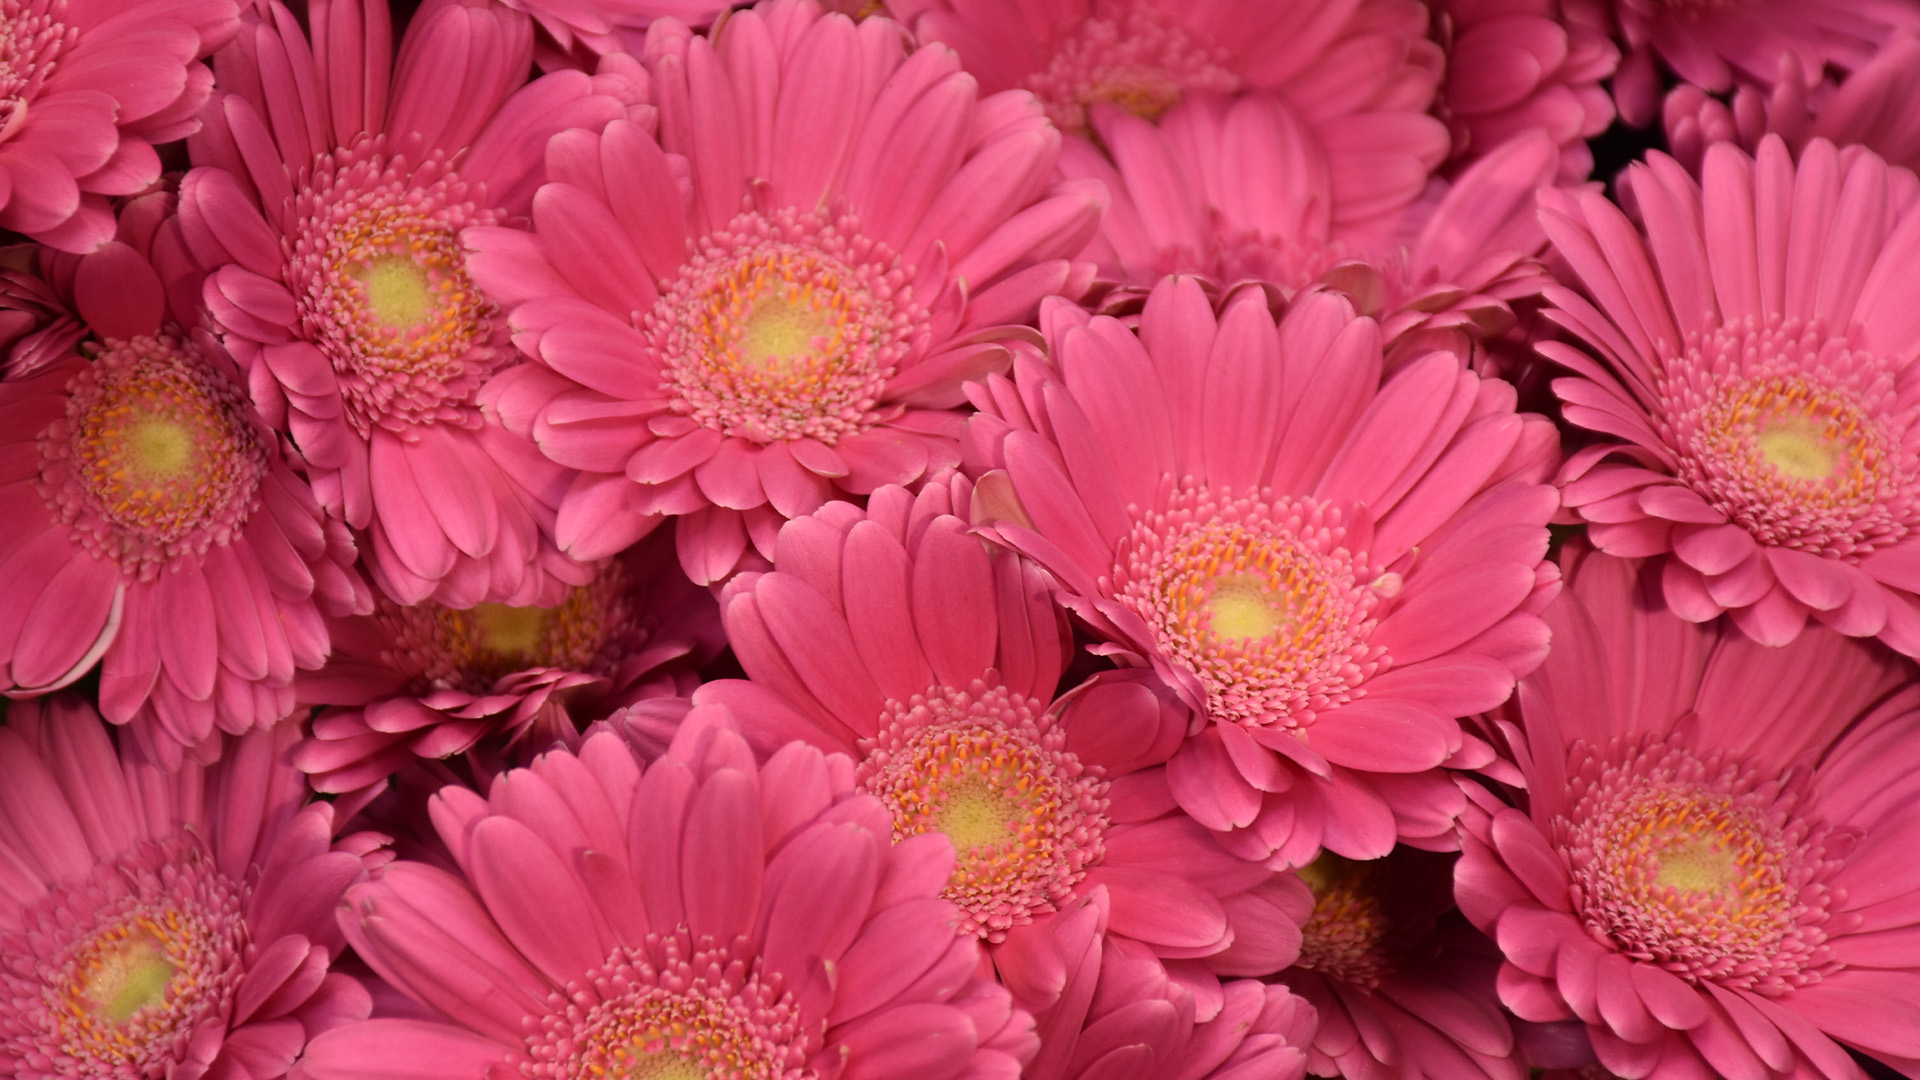 Otestuj sa: Uplatnil by si sa so svojimi znalosťami o kvetoch v kvetinárstve?